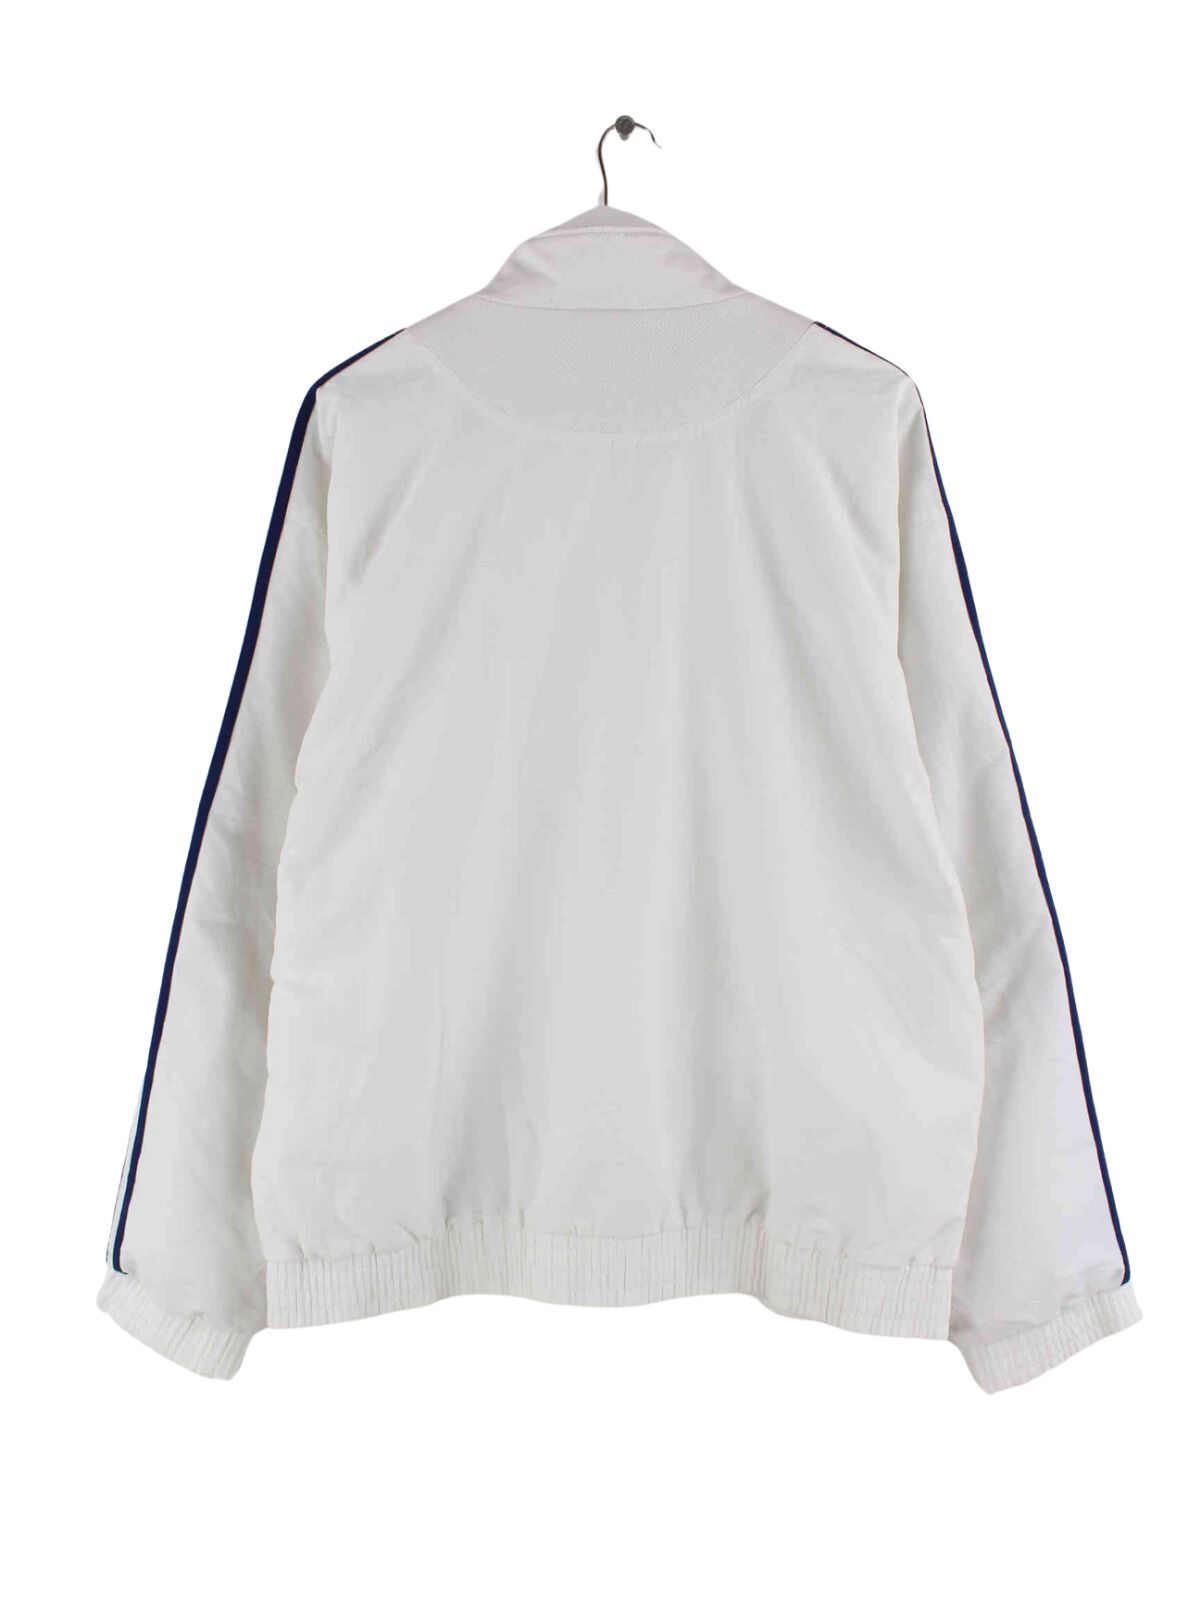 Adidas 90s Vintage 3-Stripes Trainingsjacke Weiß L (back image)